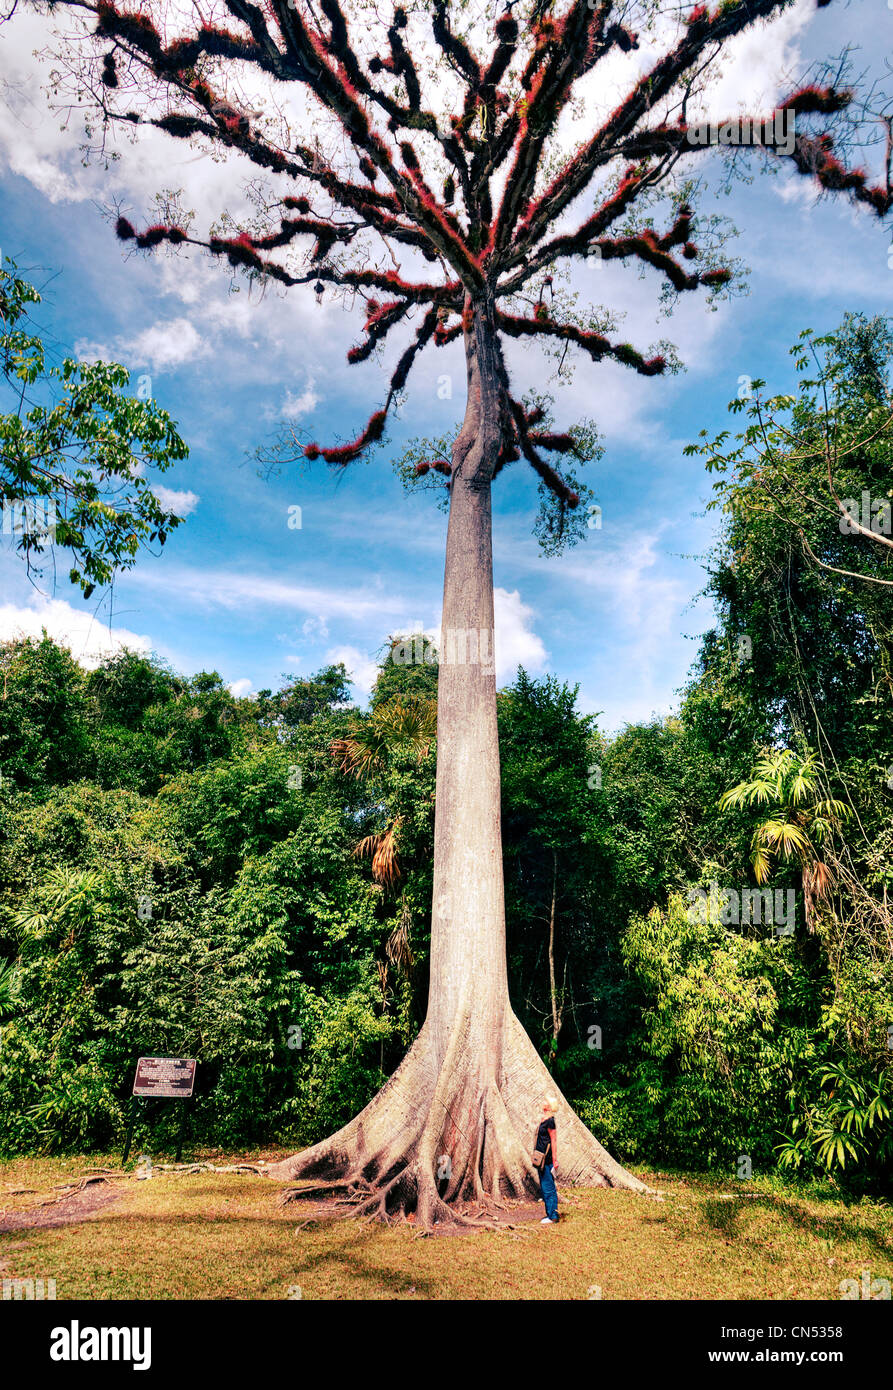 A ceiba tree (Guatemala's national tree) in Tikal National Park. Stock Photo